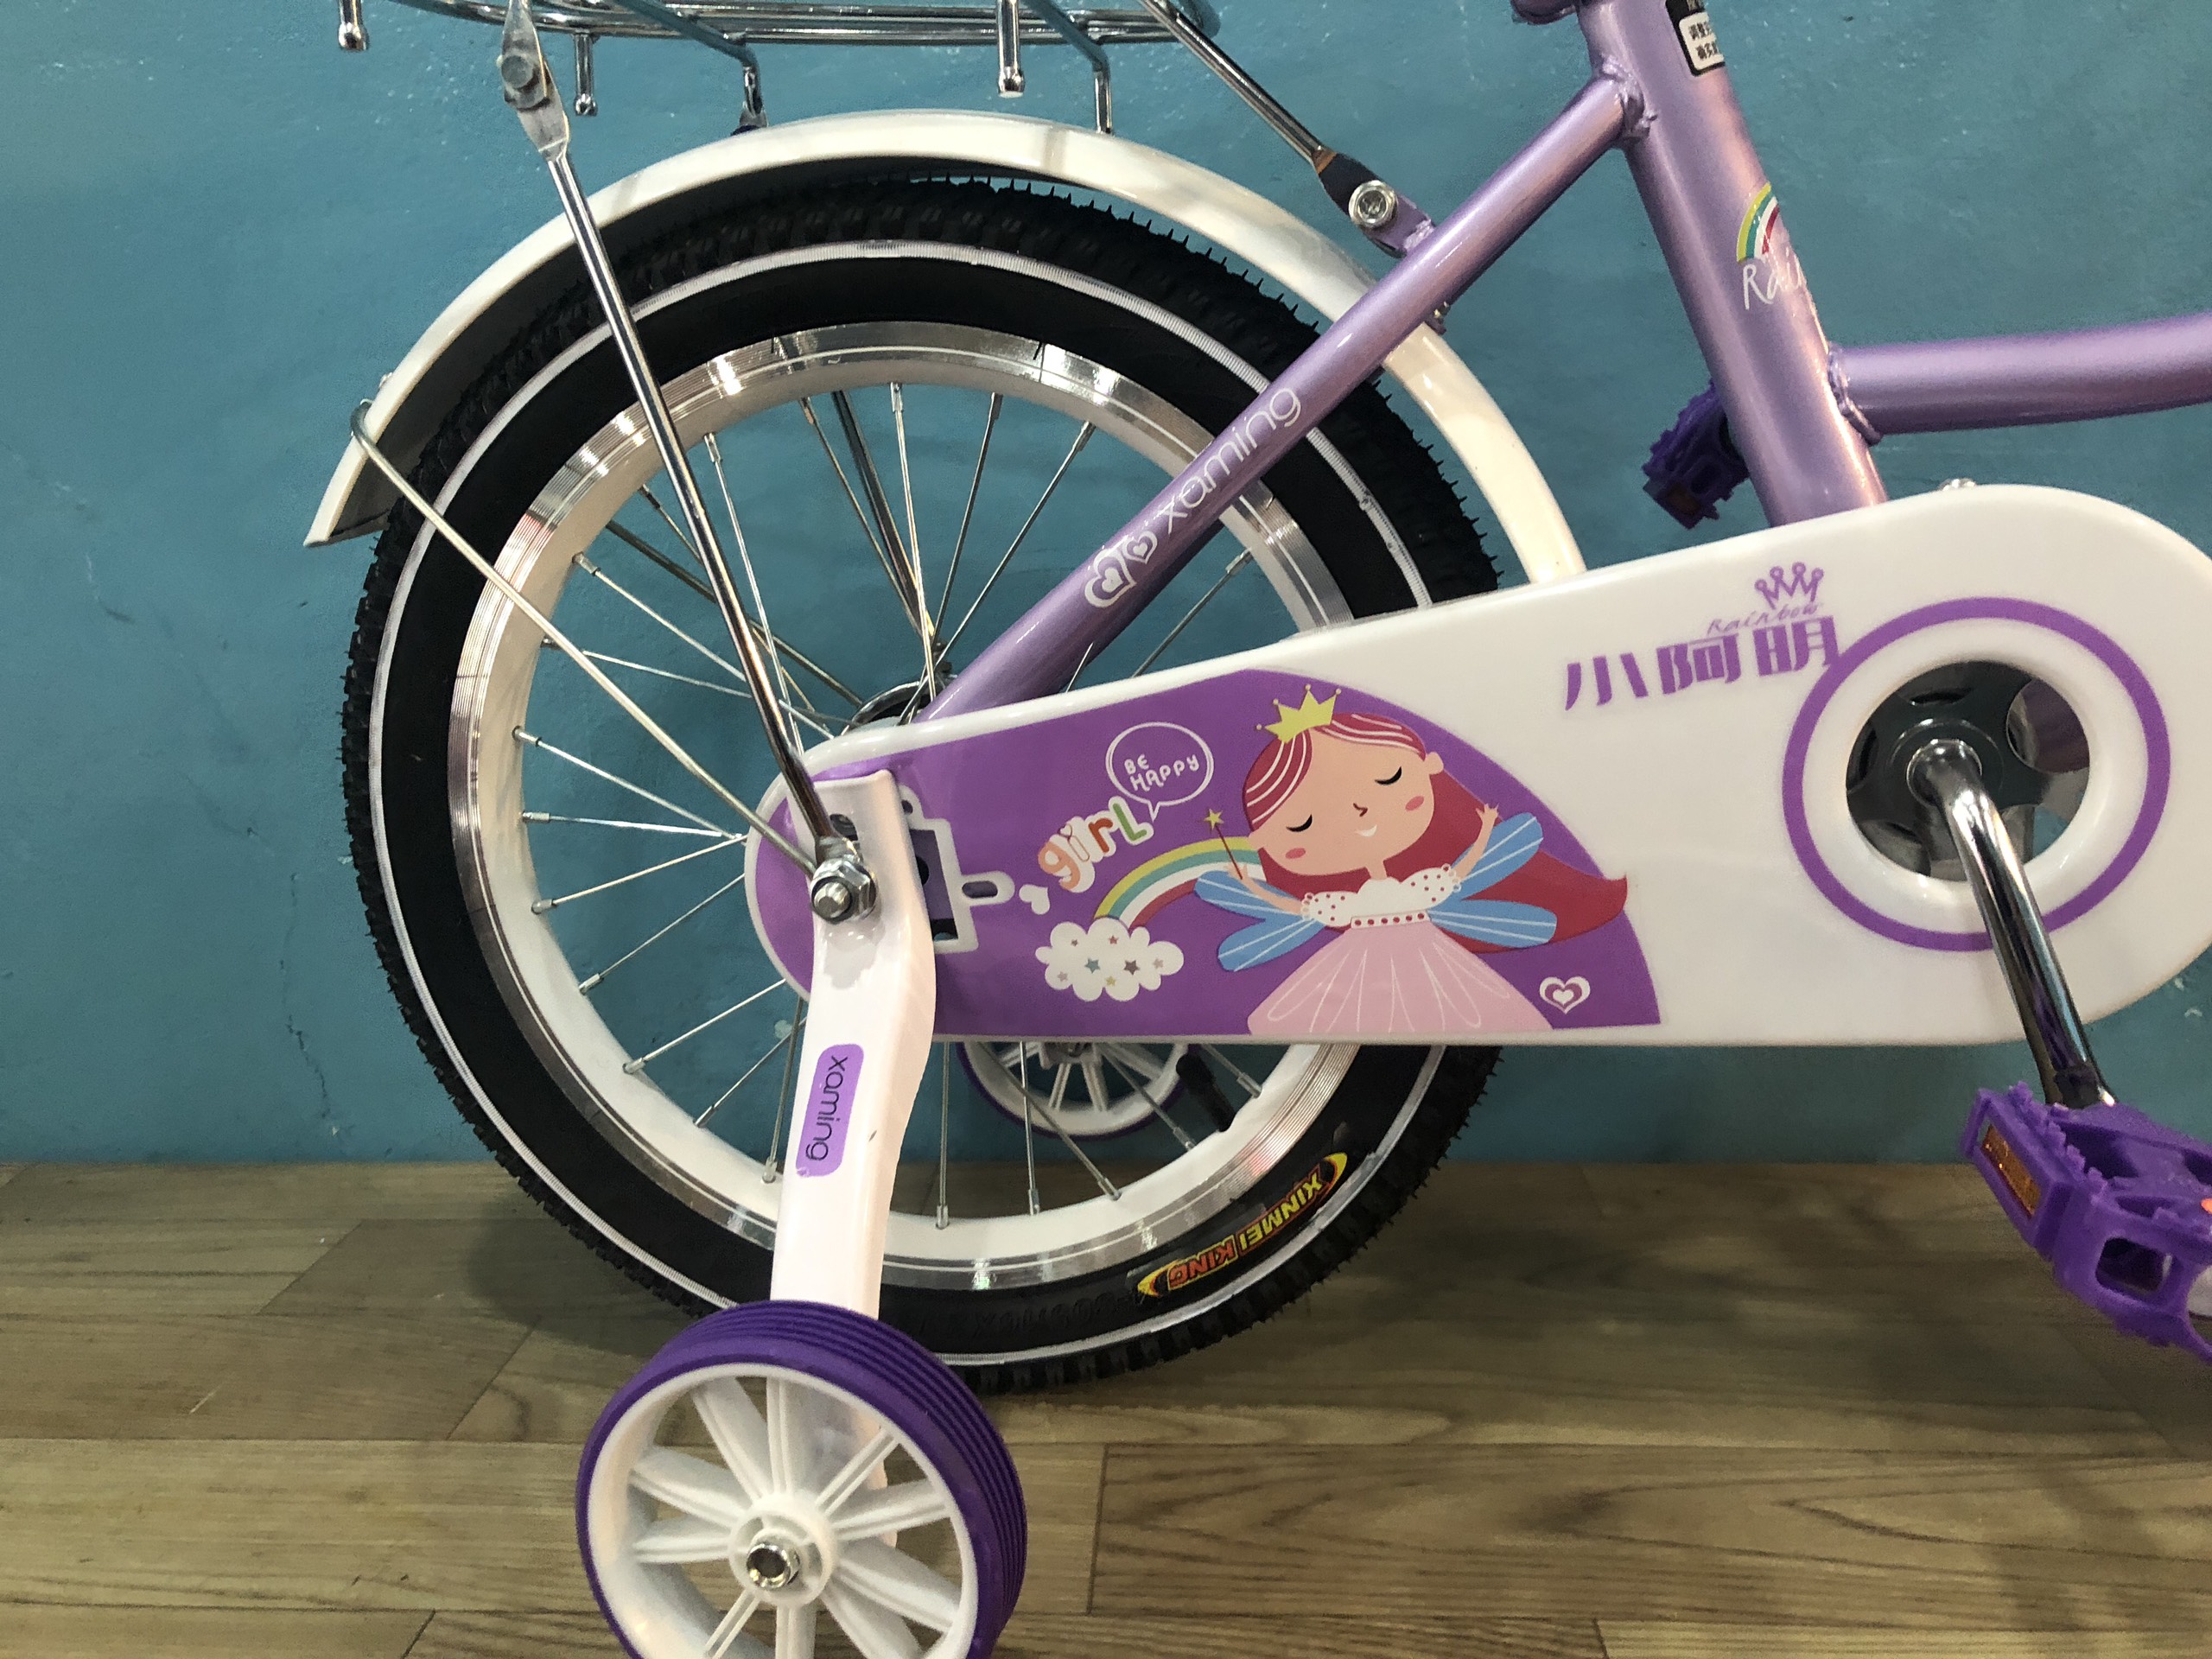 Xe đạp trẻ em: Sức khỏe và niềm vui sẽ đến với các bé khi trải nghiệm cùng chiếc xe đạp trẻ em chất lượng. Xe đạp không chỉ giúp bé tăng cường thể lực mà còn giúp bé cảm nhận được sự tự do và khám phá thế giới xung quanh.